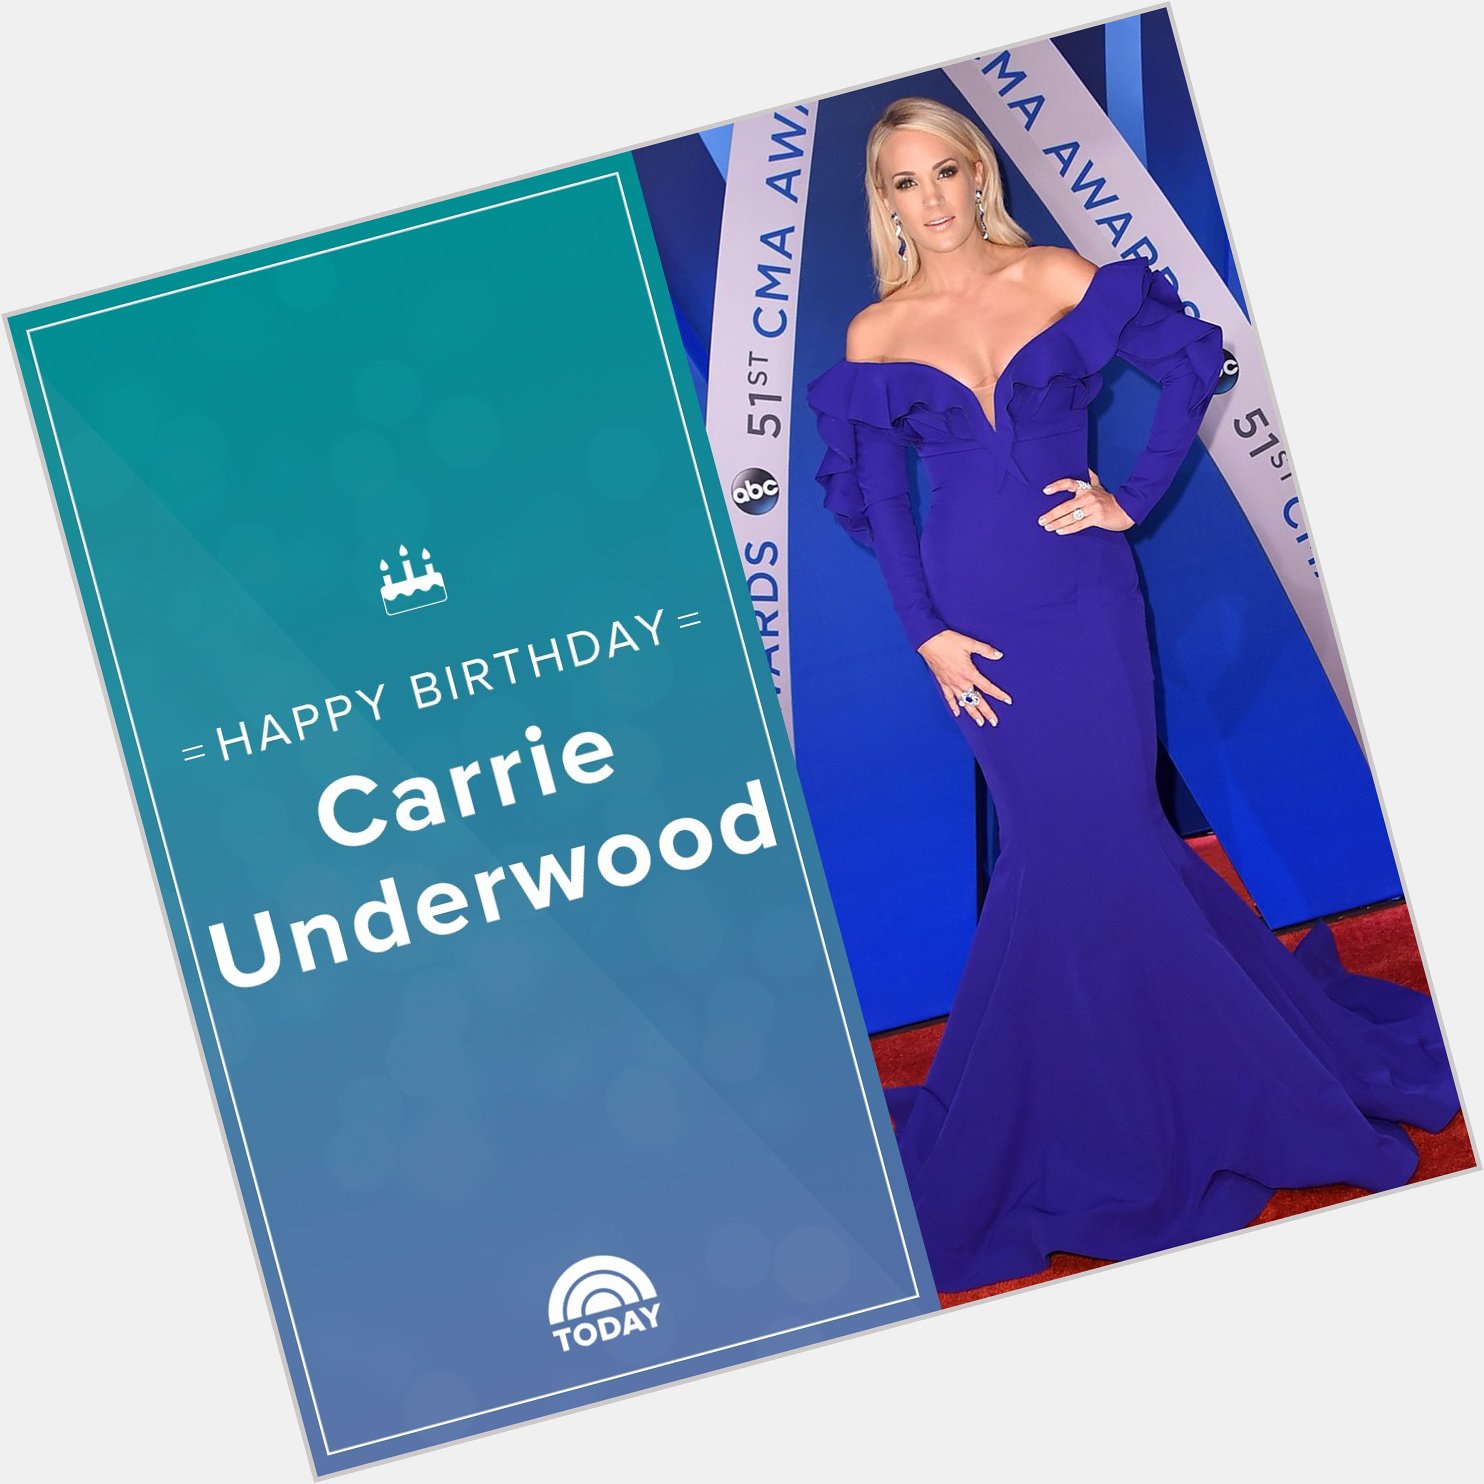 Happy 35th birthday, Carrie Underwood!  